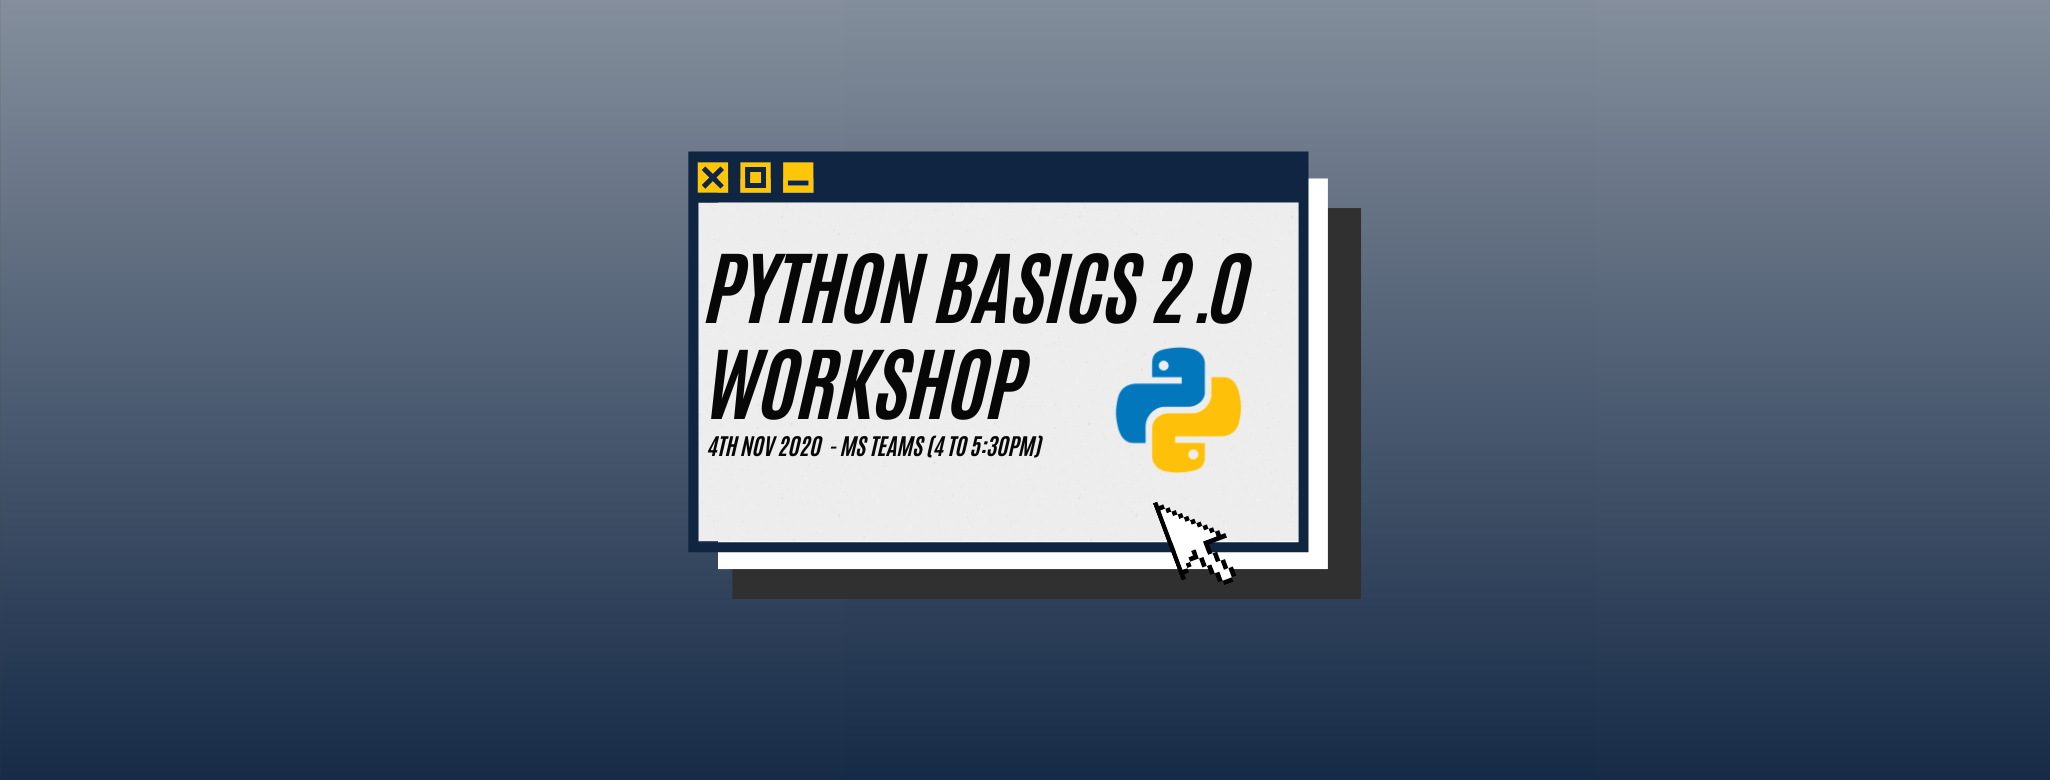 Python 2.0 Workshop Header